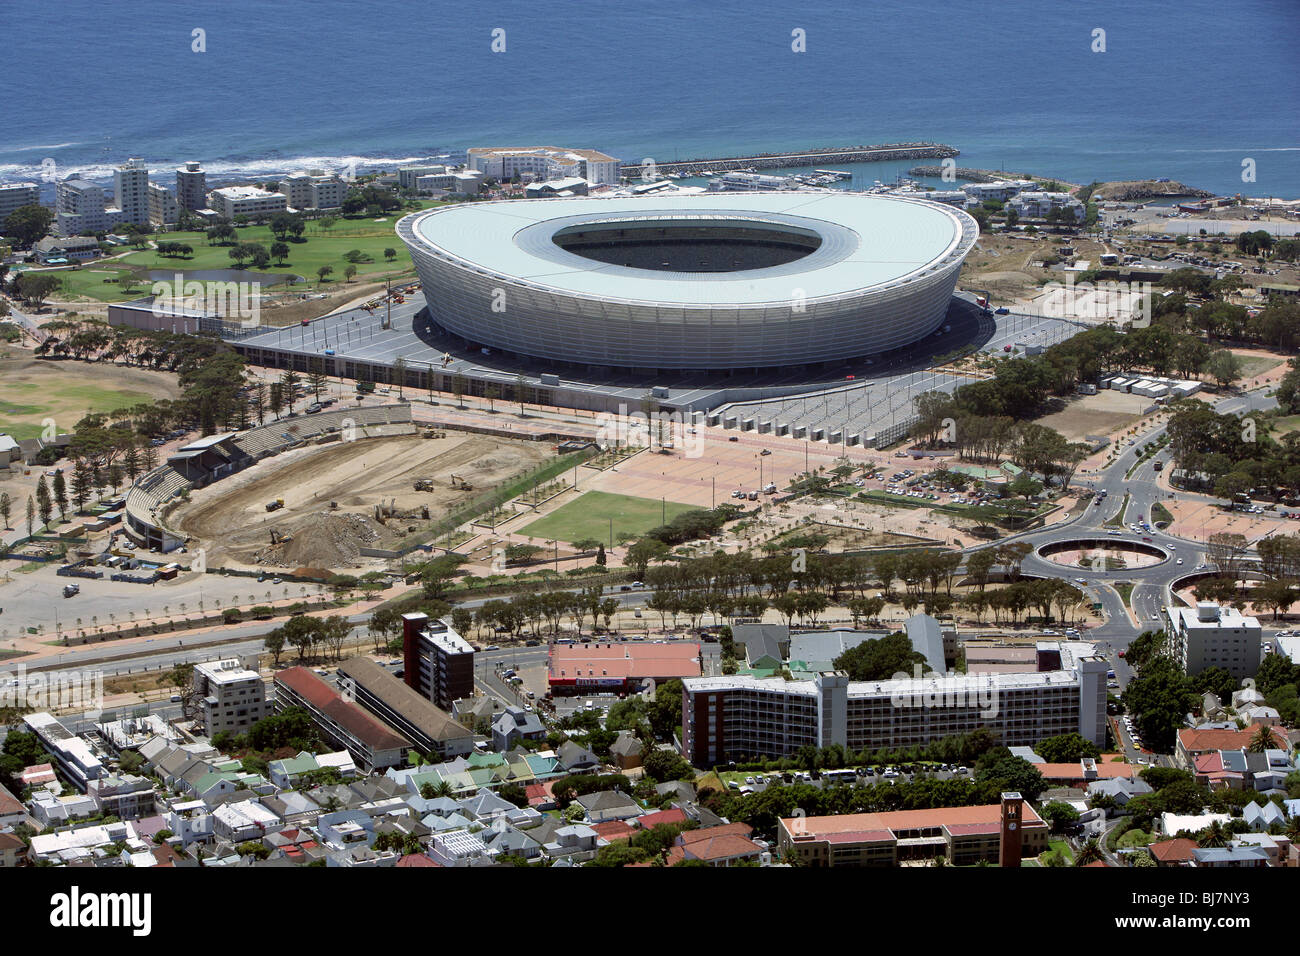 Sudáfrica, Ciudad del Cabo: Estadio Green Point, sede de la Copa Mundial de la FIFA 2010 Foto de stock